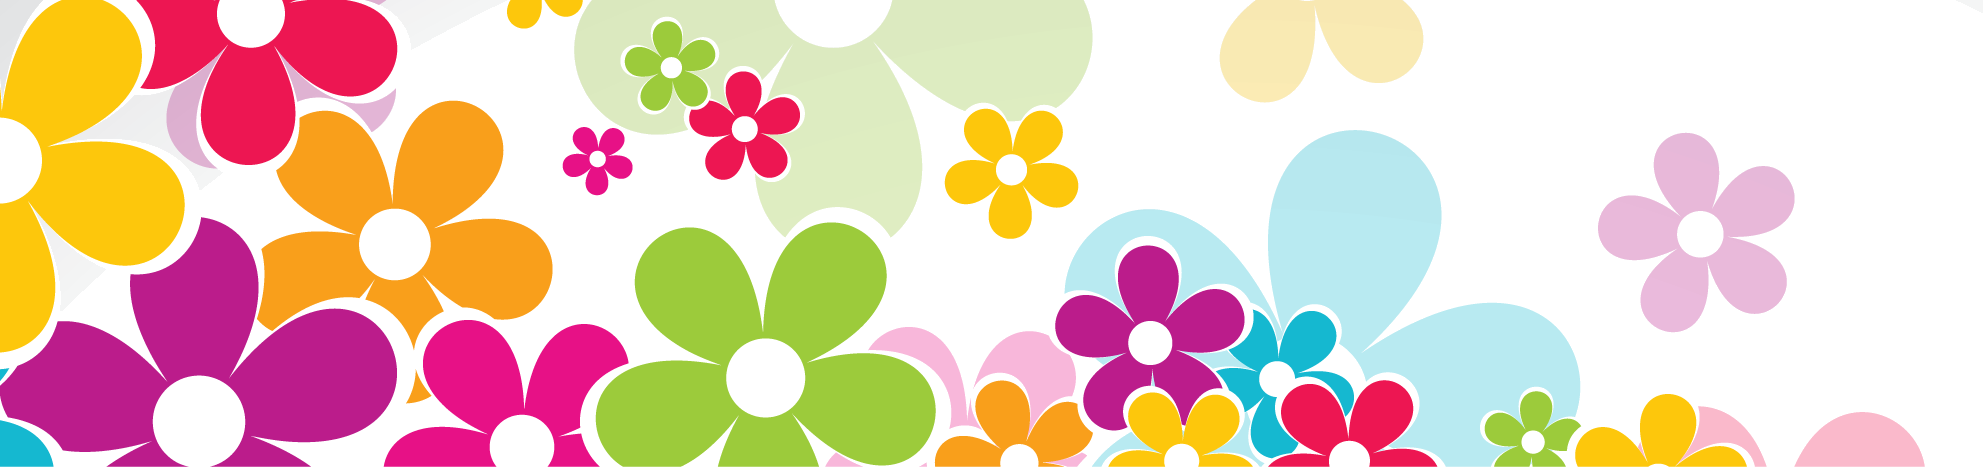 花や葉のイラスト フリー素材 バナー タイトル枠no 043 カラフルフラワー